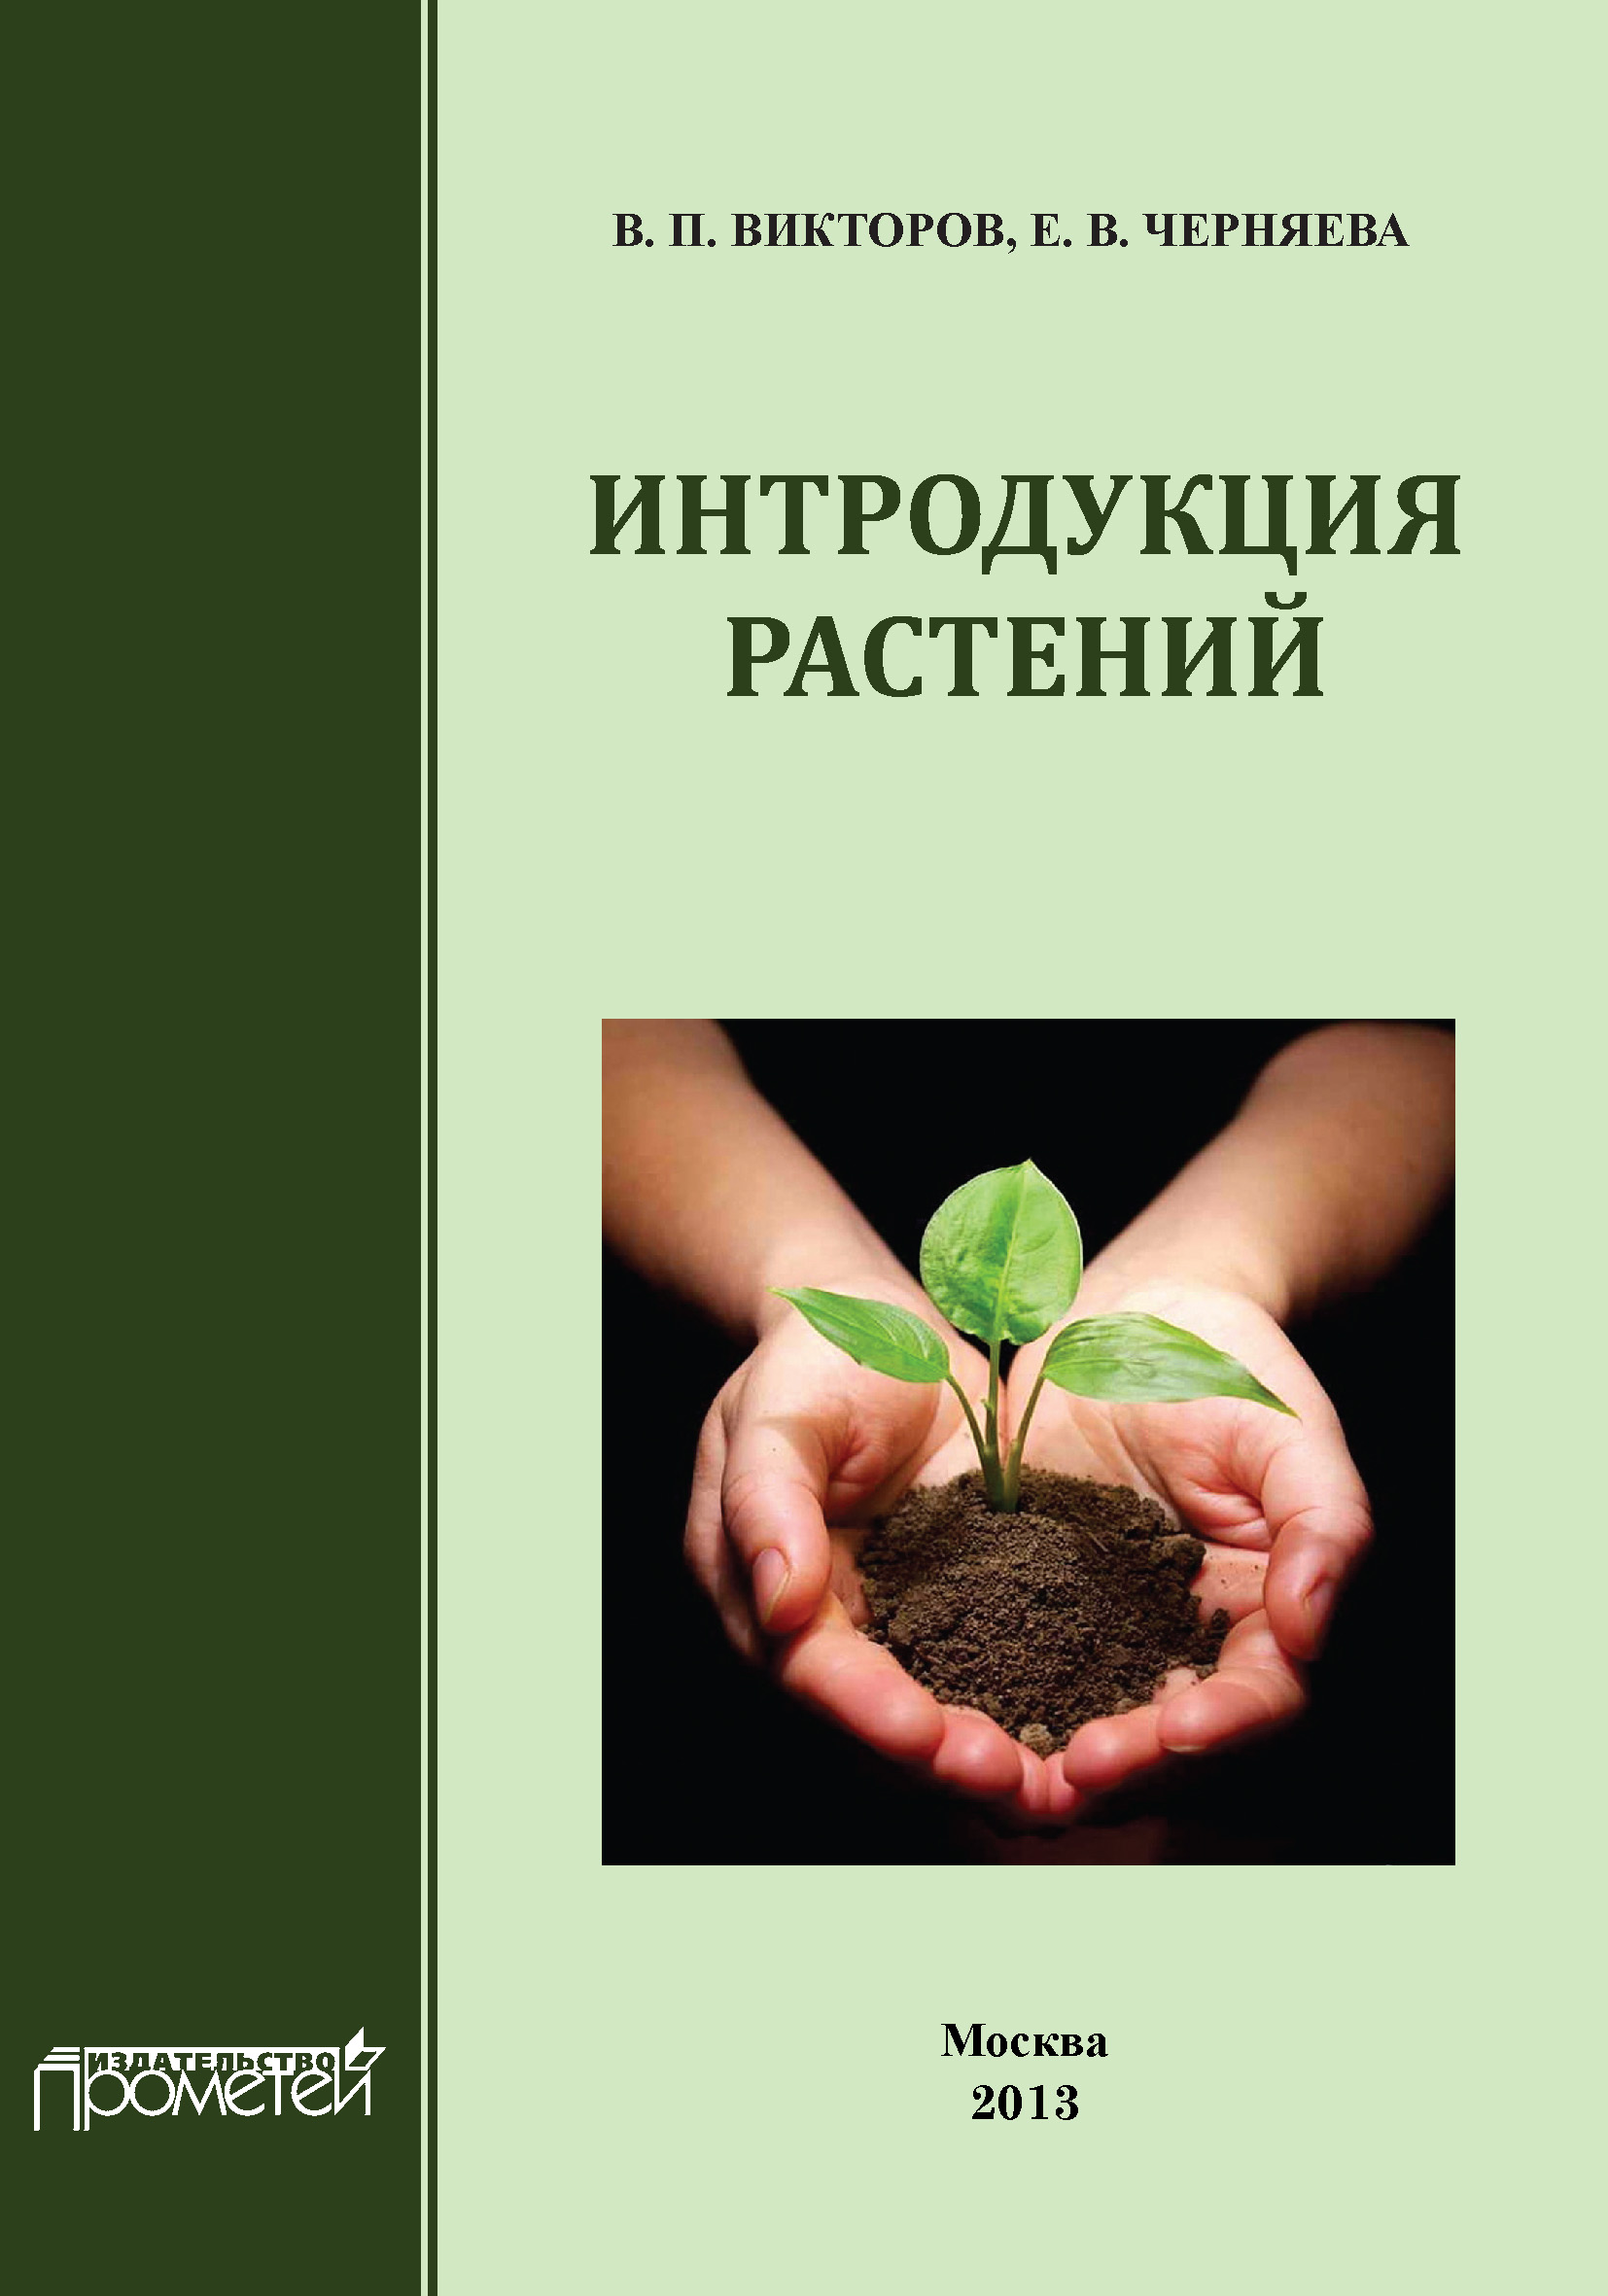 Книга Интродукция растений из серии , созданная Е. Черняева, В. Викторов, может относится к жанру Биология. Стоимость книги Интродукция растений  с идентификатором 9959959 составляет 200.00 руб.